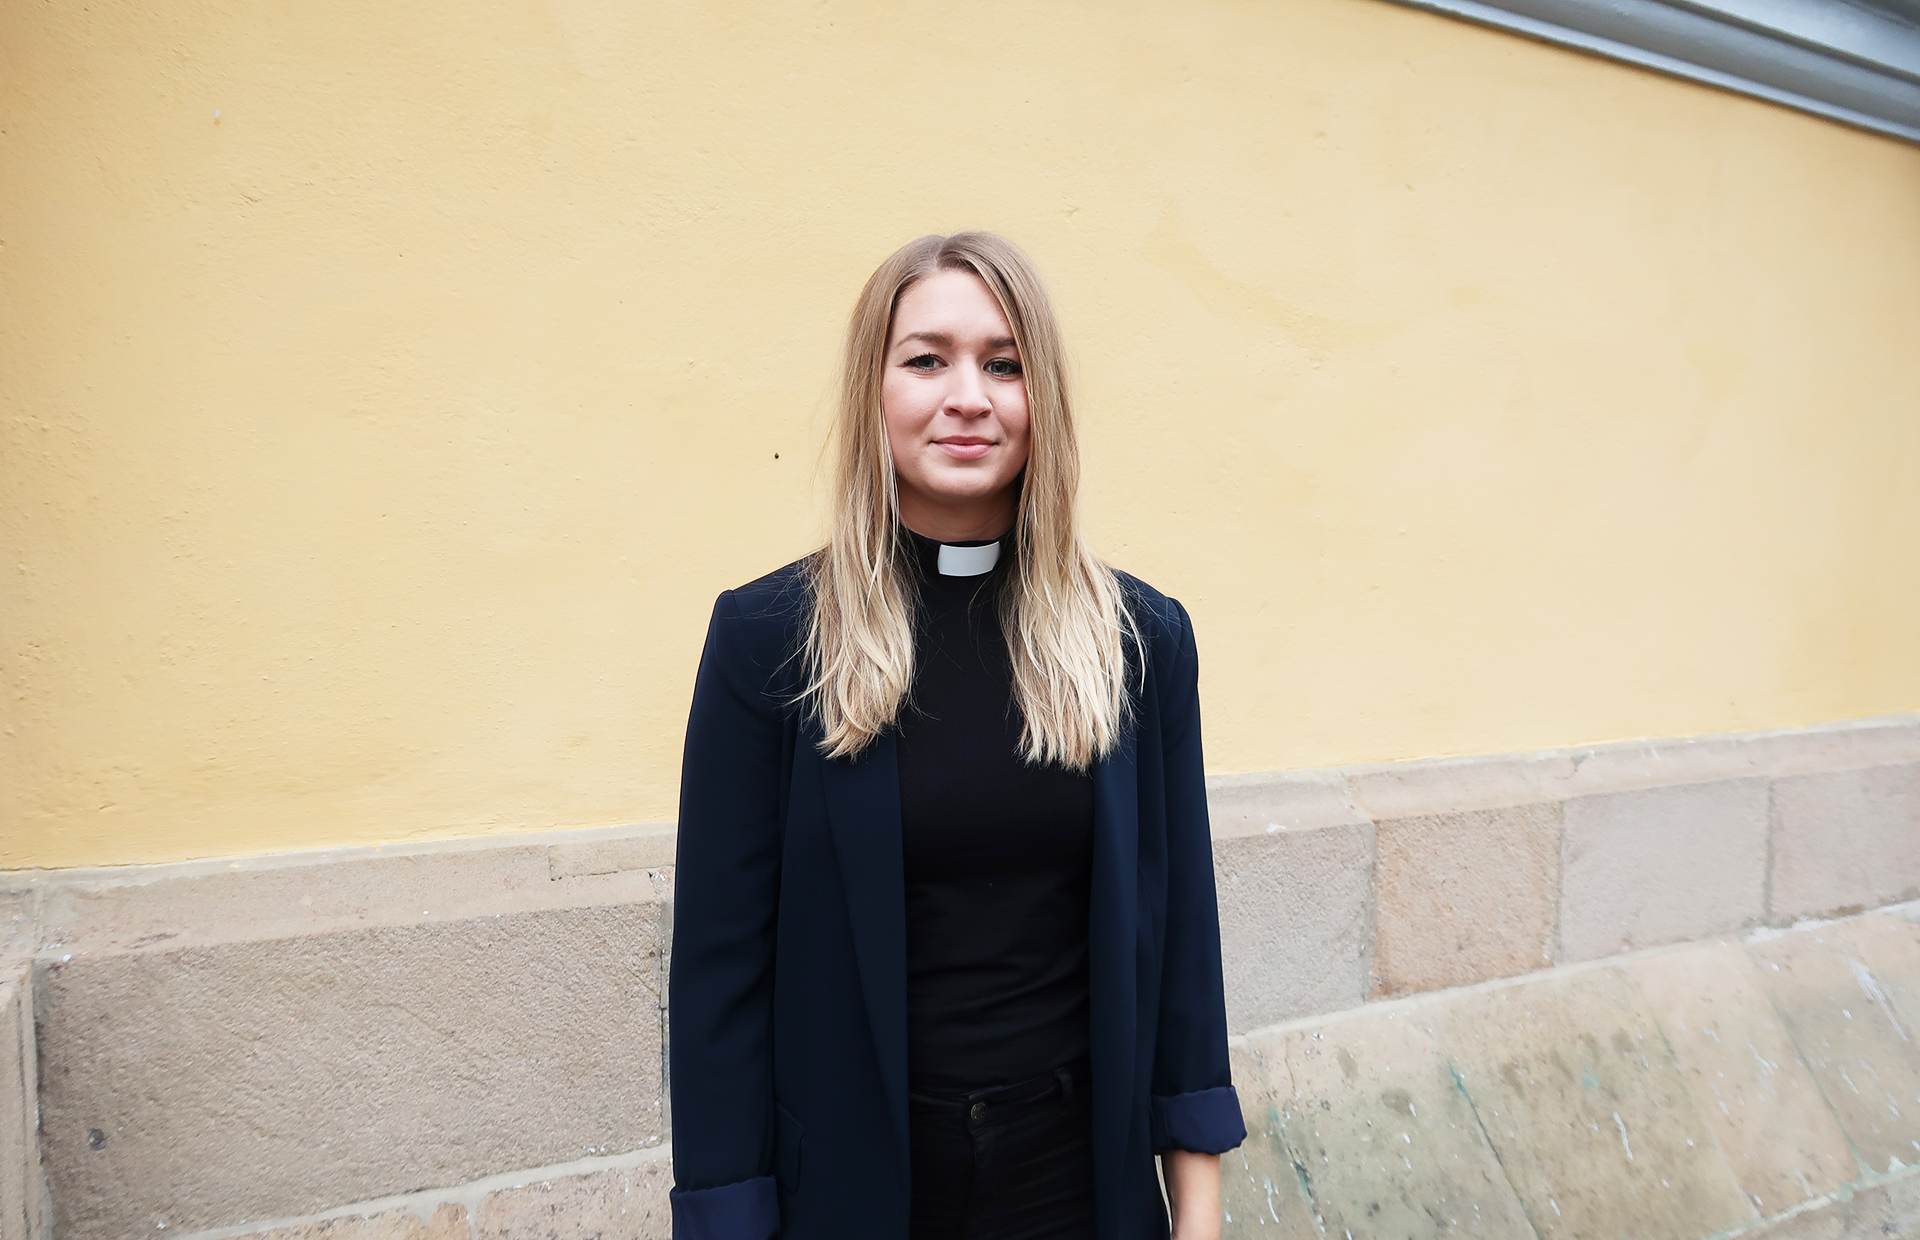 Пасторка Эстер Касен из Швеции рассказывает о своей жизни и вере